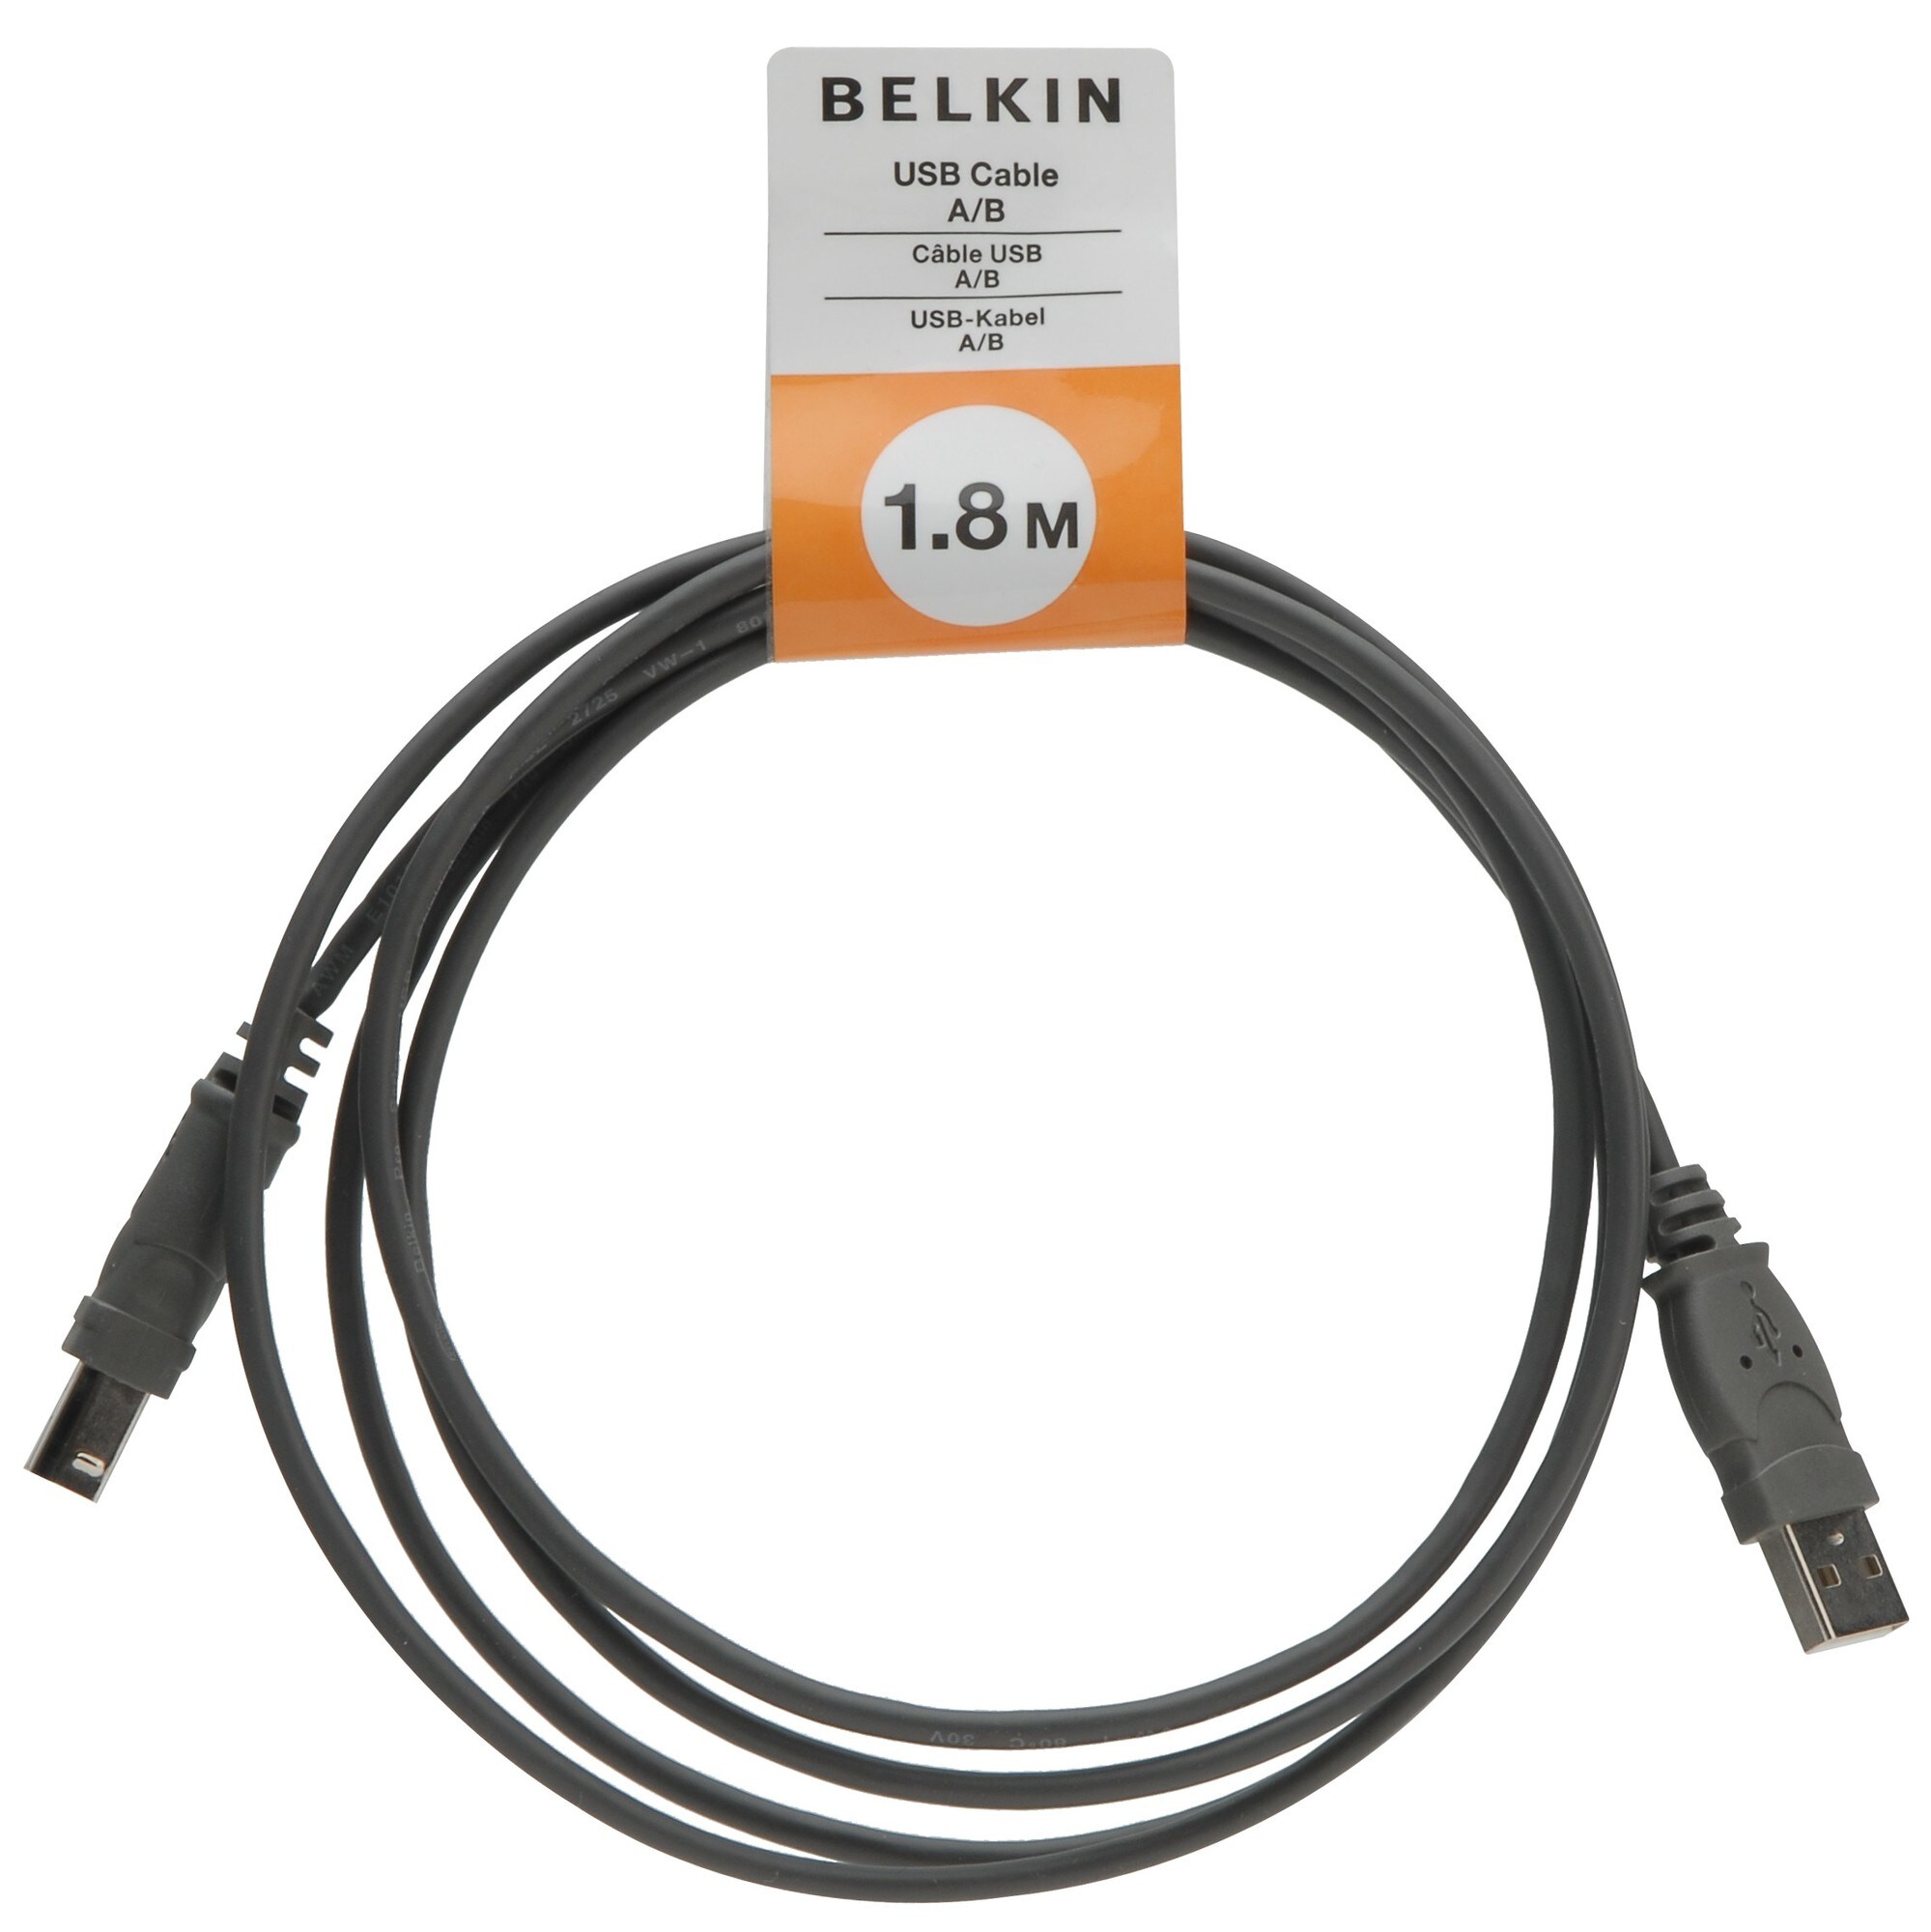 Belkin USB-kaapeli 1.8 metriä - Gigantti verkkokauppa